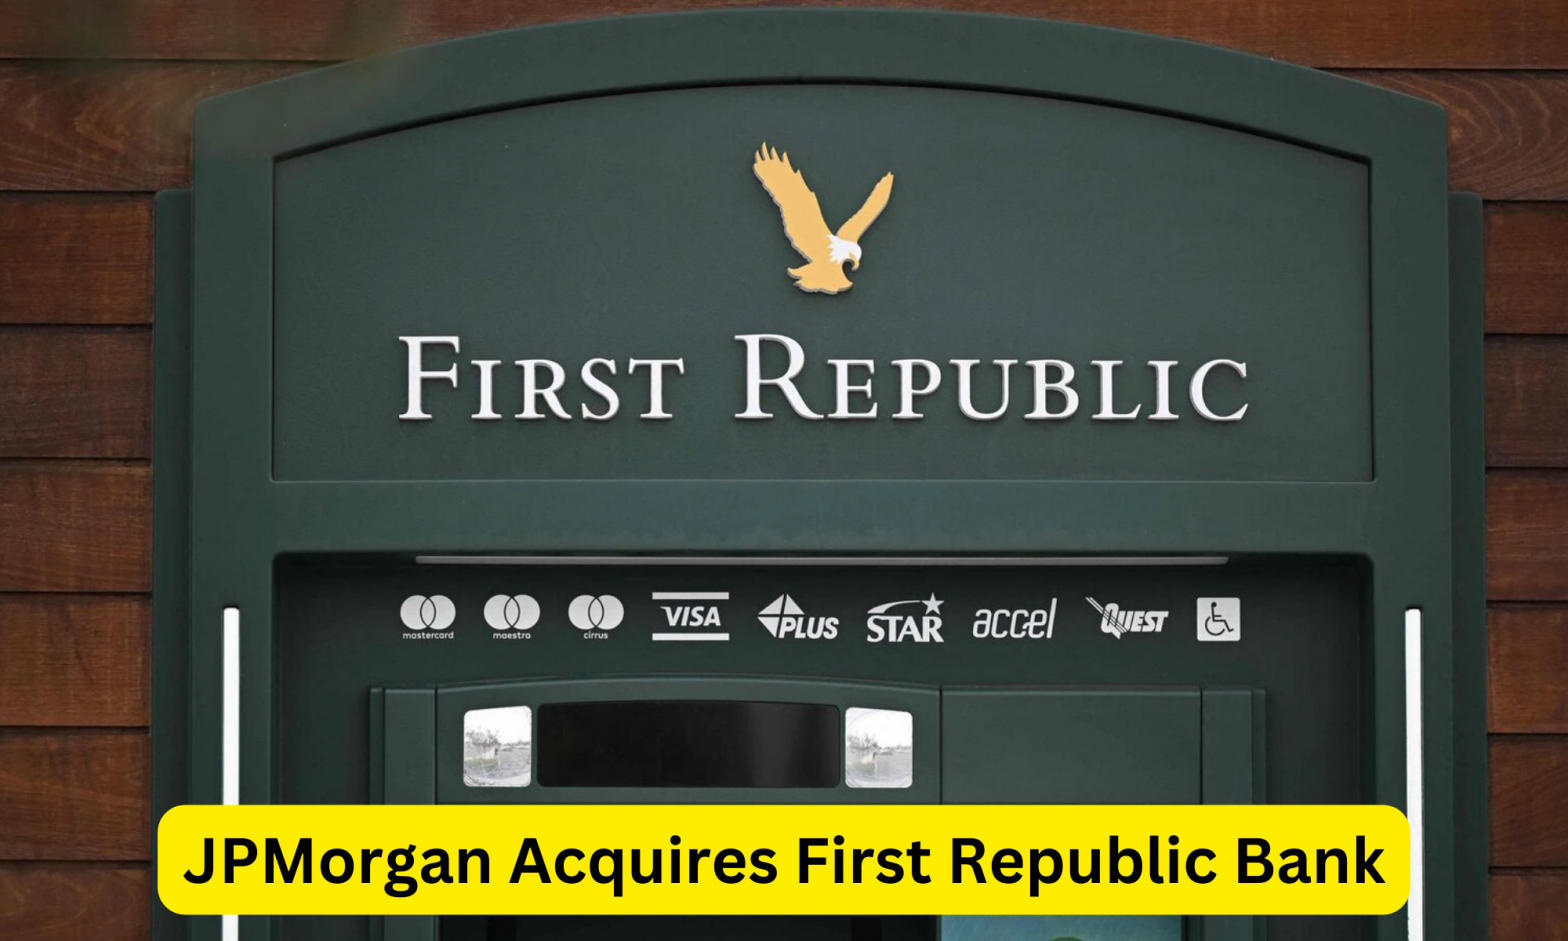 JPMorgan Acquires First Republic Bank